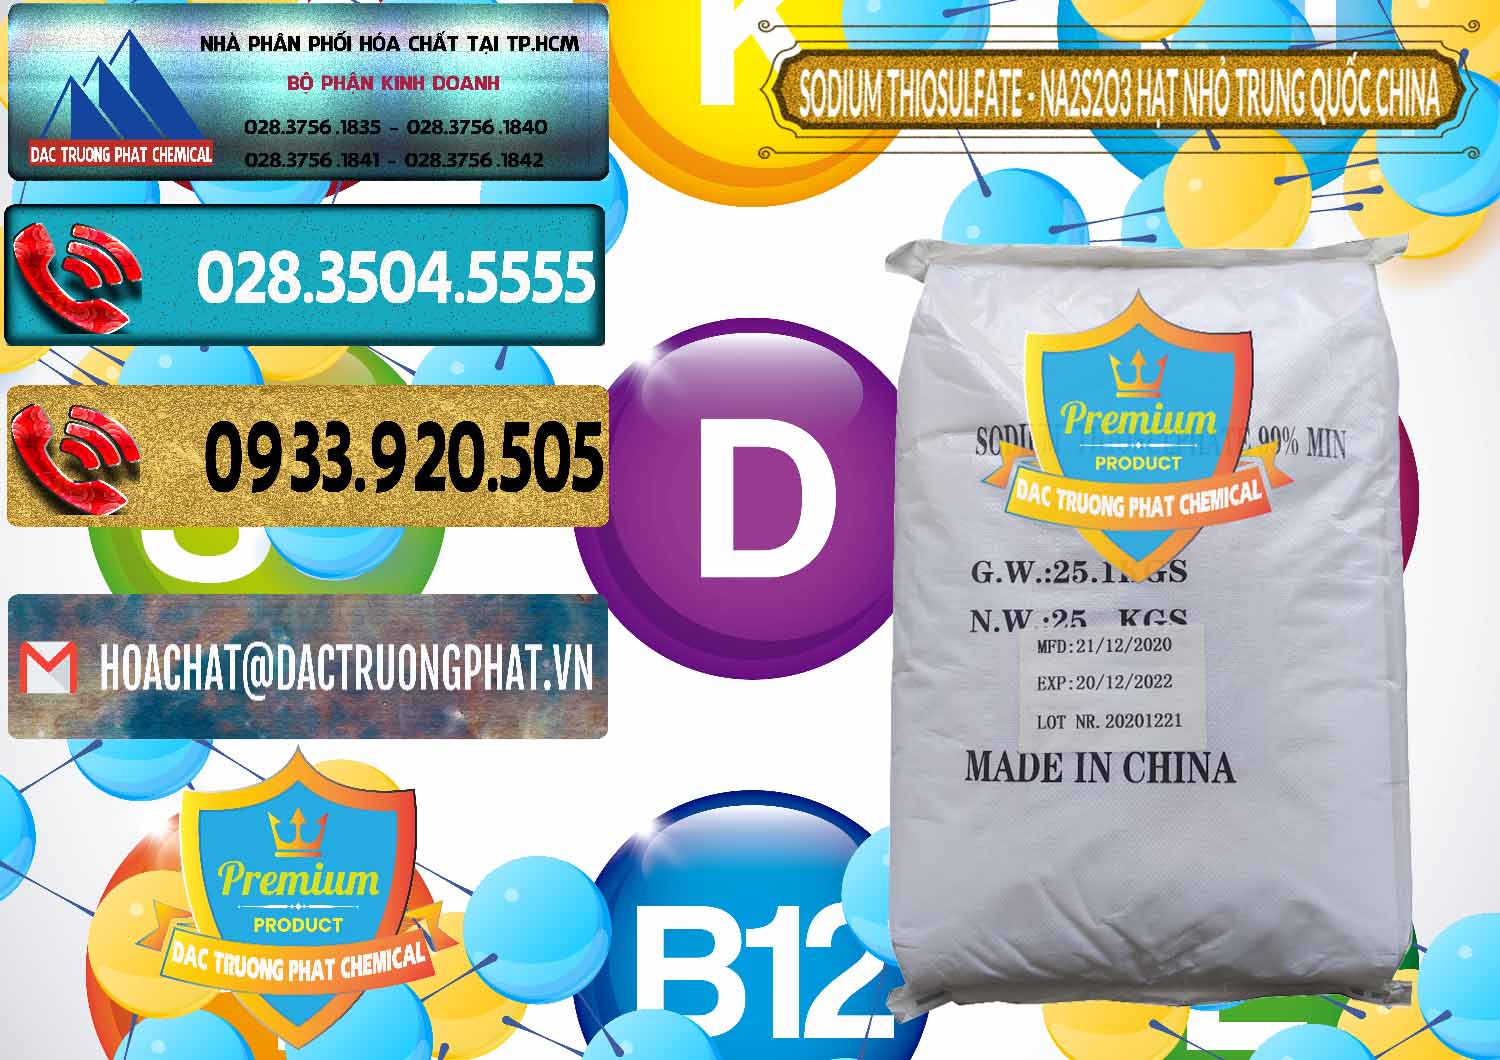 Cty nhập khẩu - bán Sodium Thiosulfate - NA2S2O3 Hạt Nhỏ Trung Quốc China - 0204 - Cty cung cấp ( bán ) hóa chất tại TP.HCM - hoachatdetnhuom.com